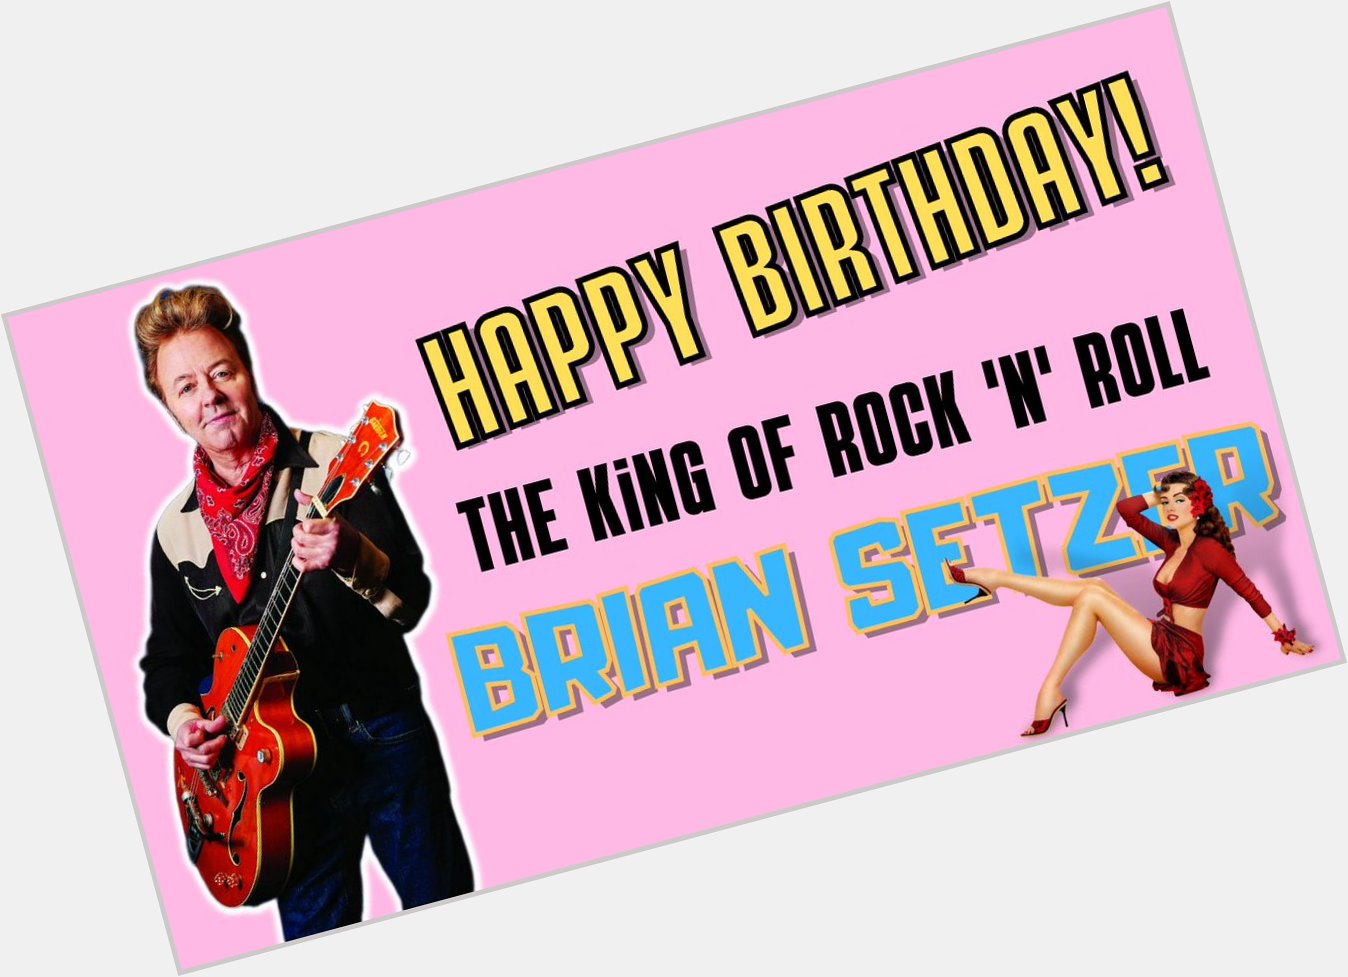 Happy Birthday, Master Brian Setzer!  